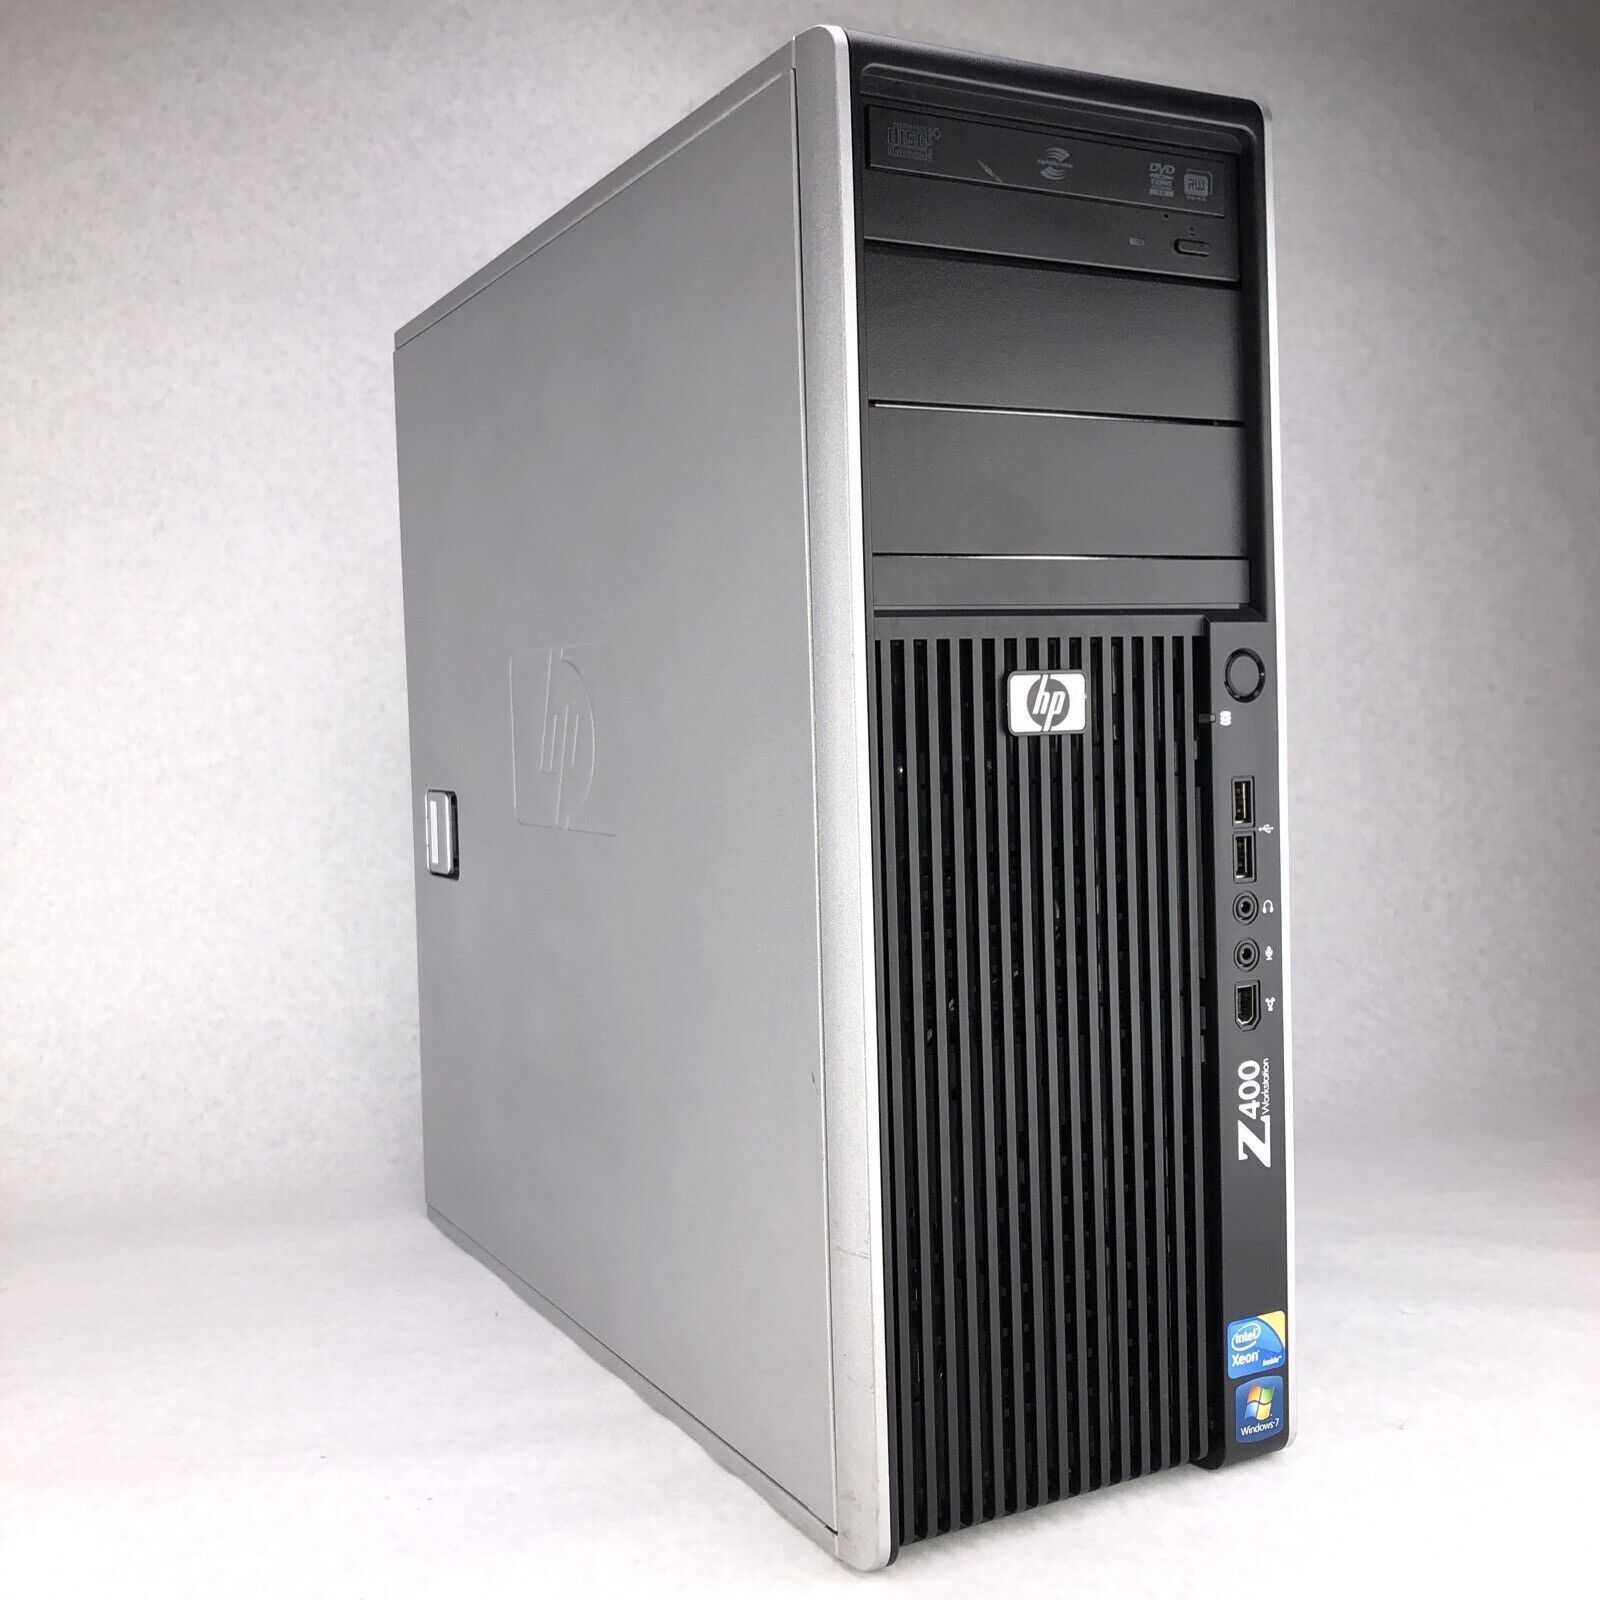 HP Z400 Workstation Intel(R) Xeon(R) CPU W3520 @ 2.67GHz 4.001953125GB DDR3